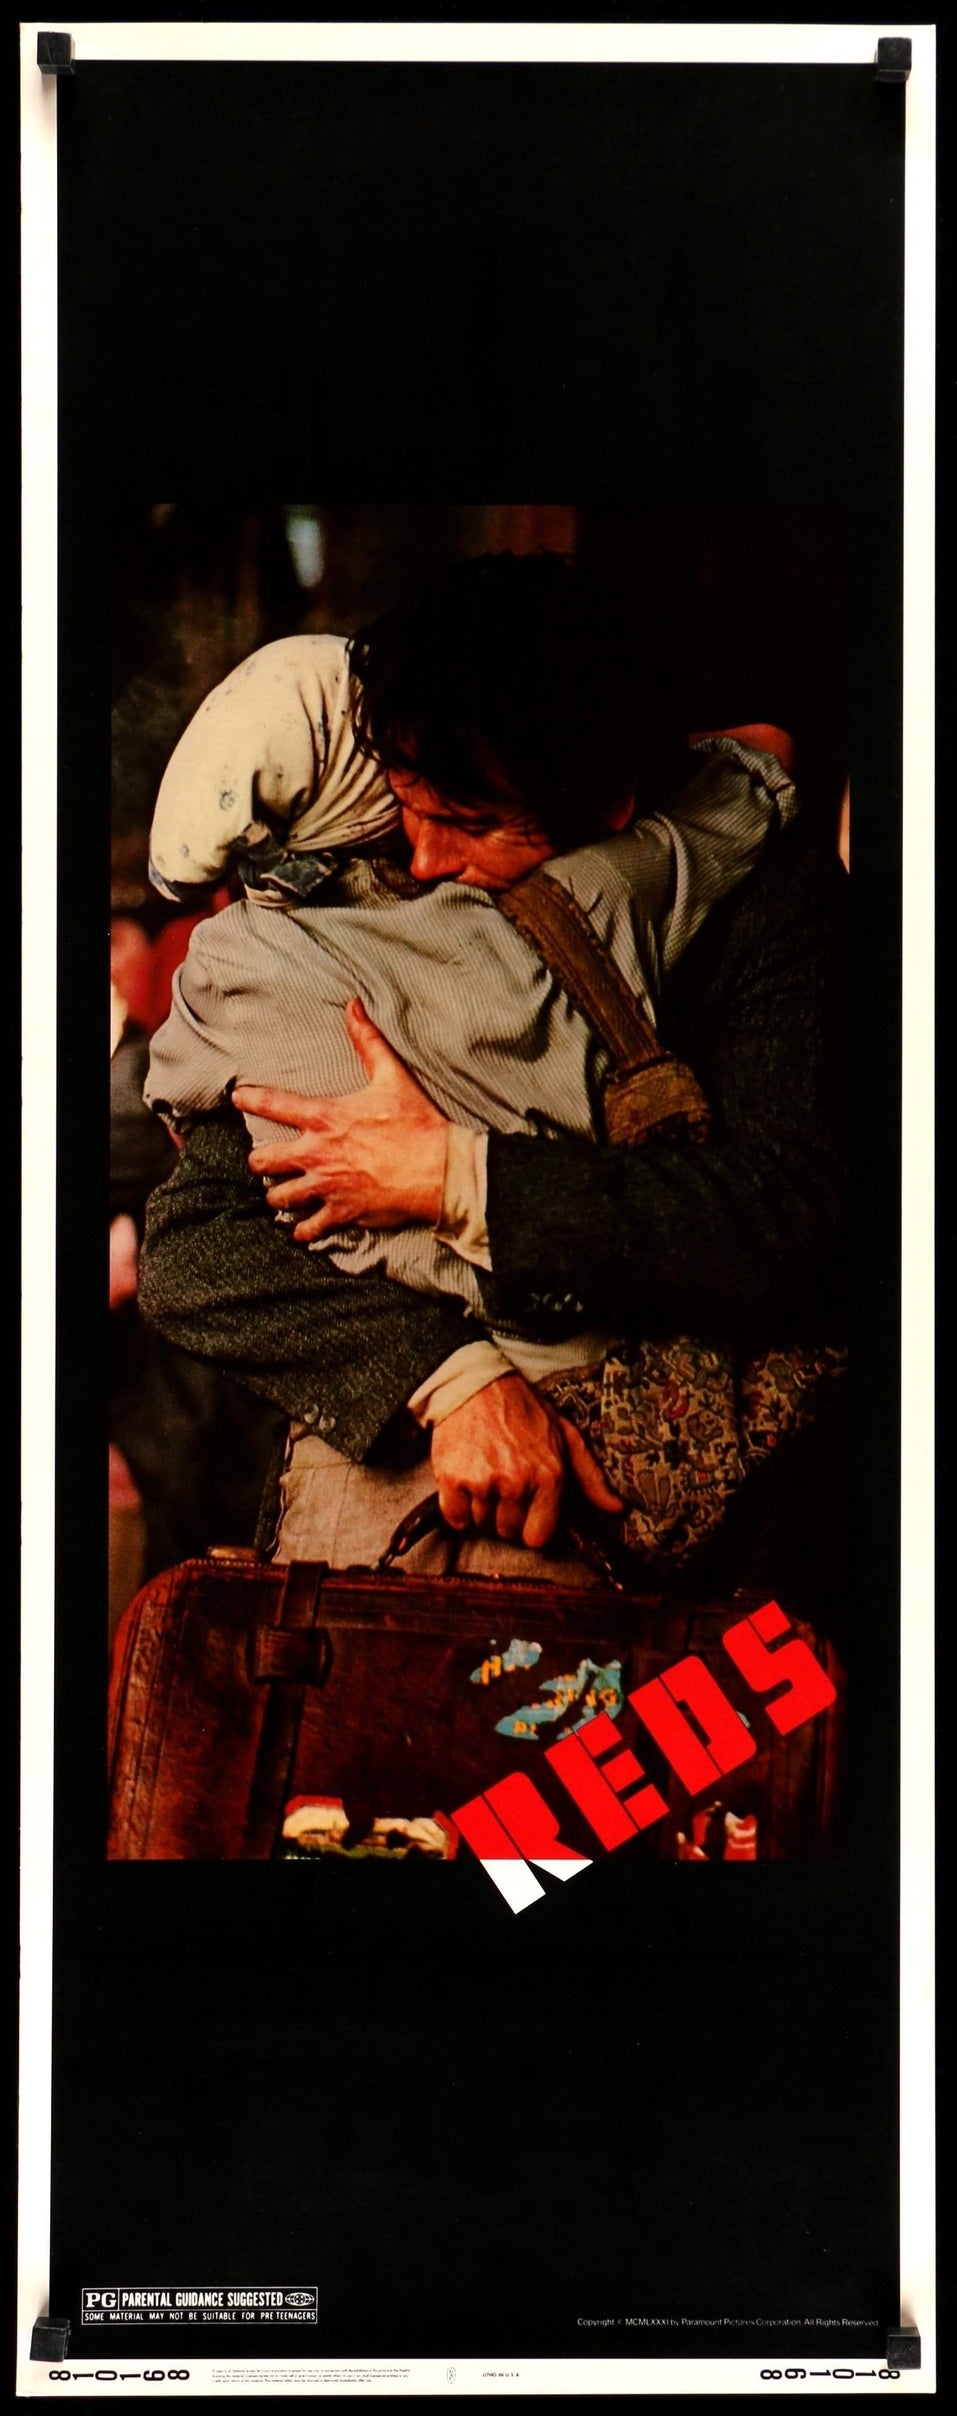 Reds (1981) original movie poster for sale at Original Film Art